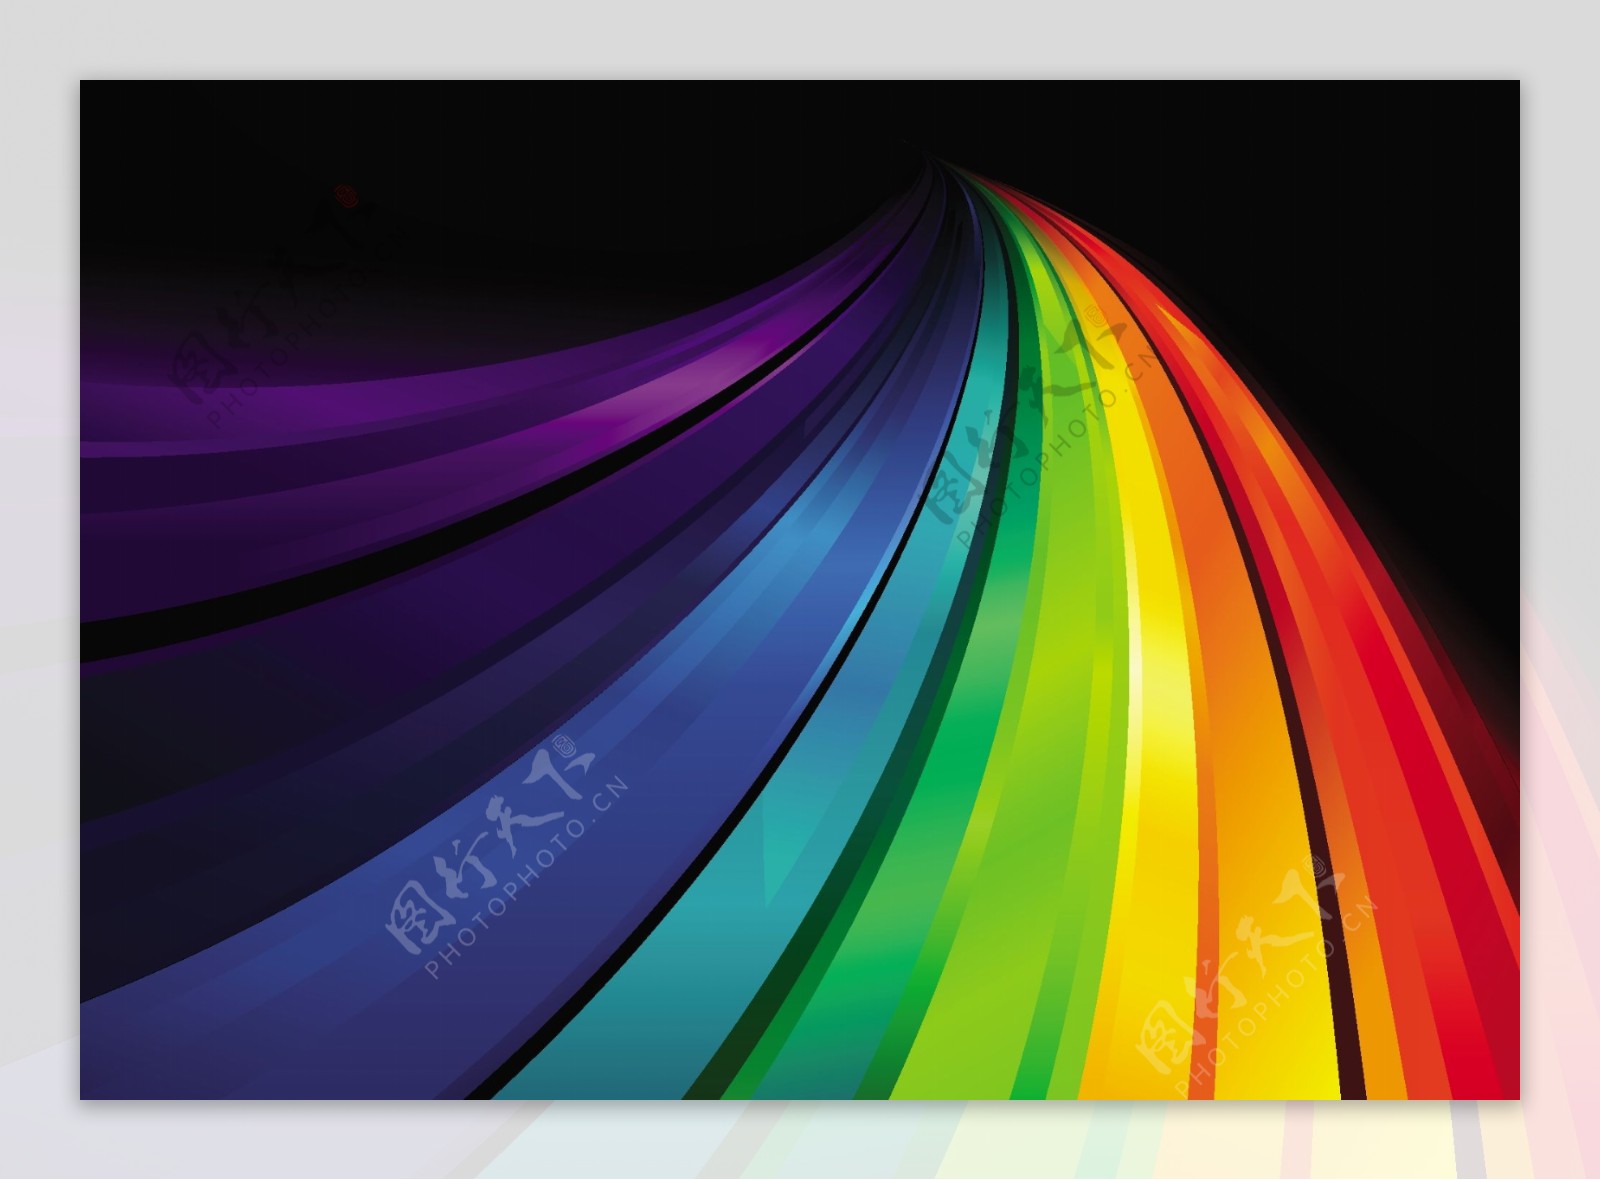 彩虹背景设计图片